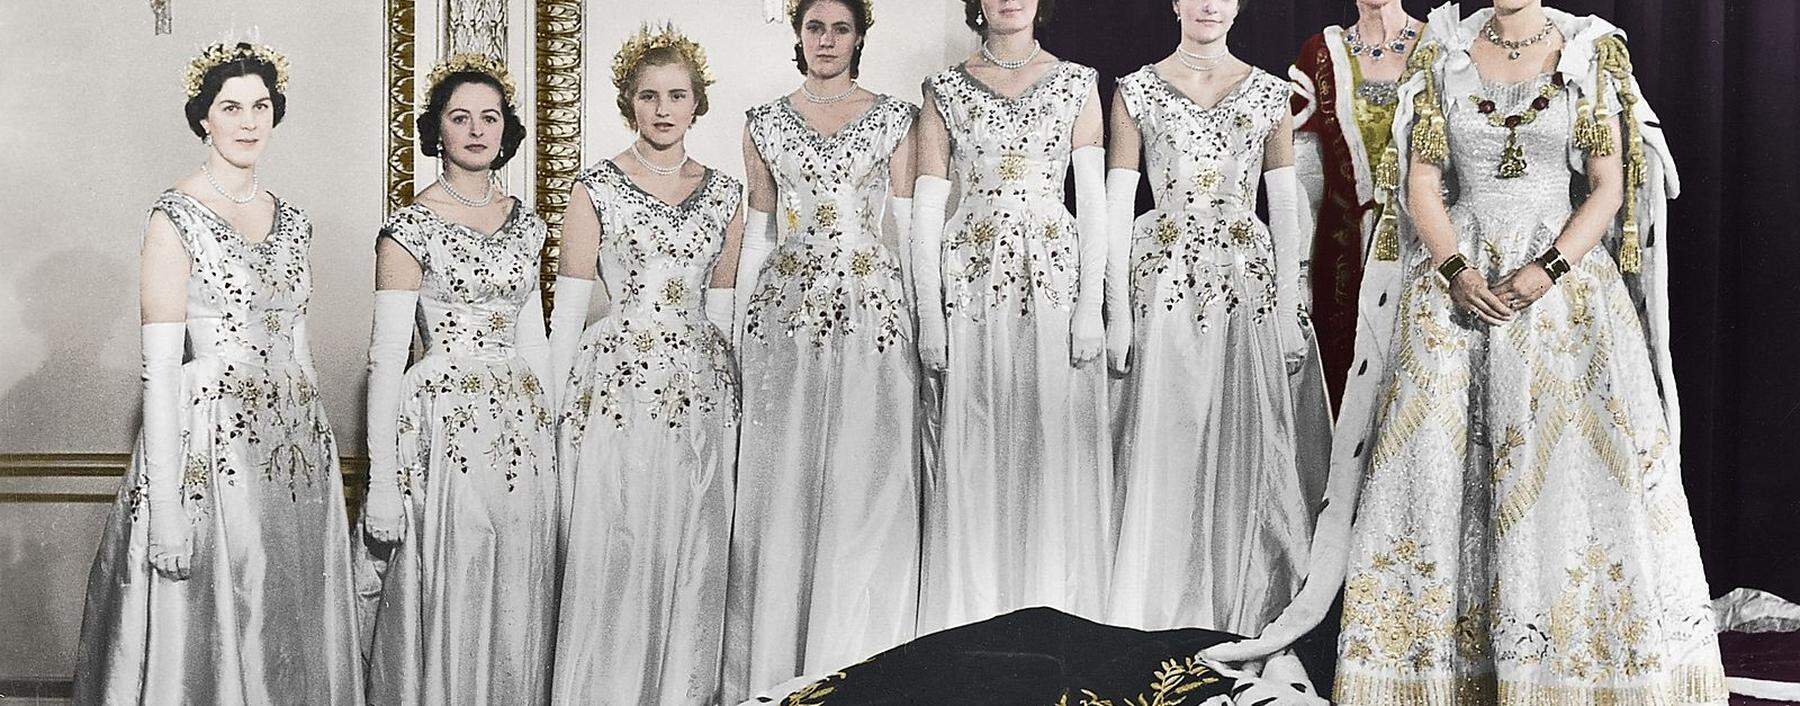 Hm Queen Elizabeth Ii With Her Maids Of Honour